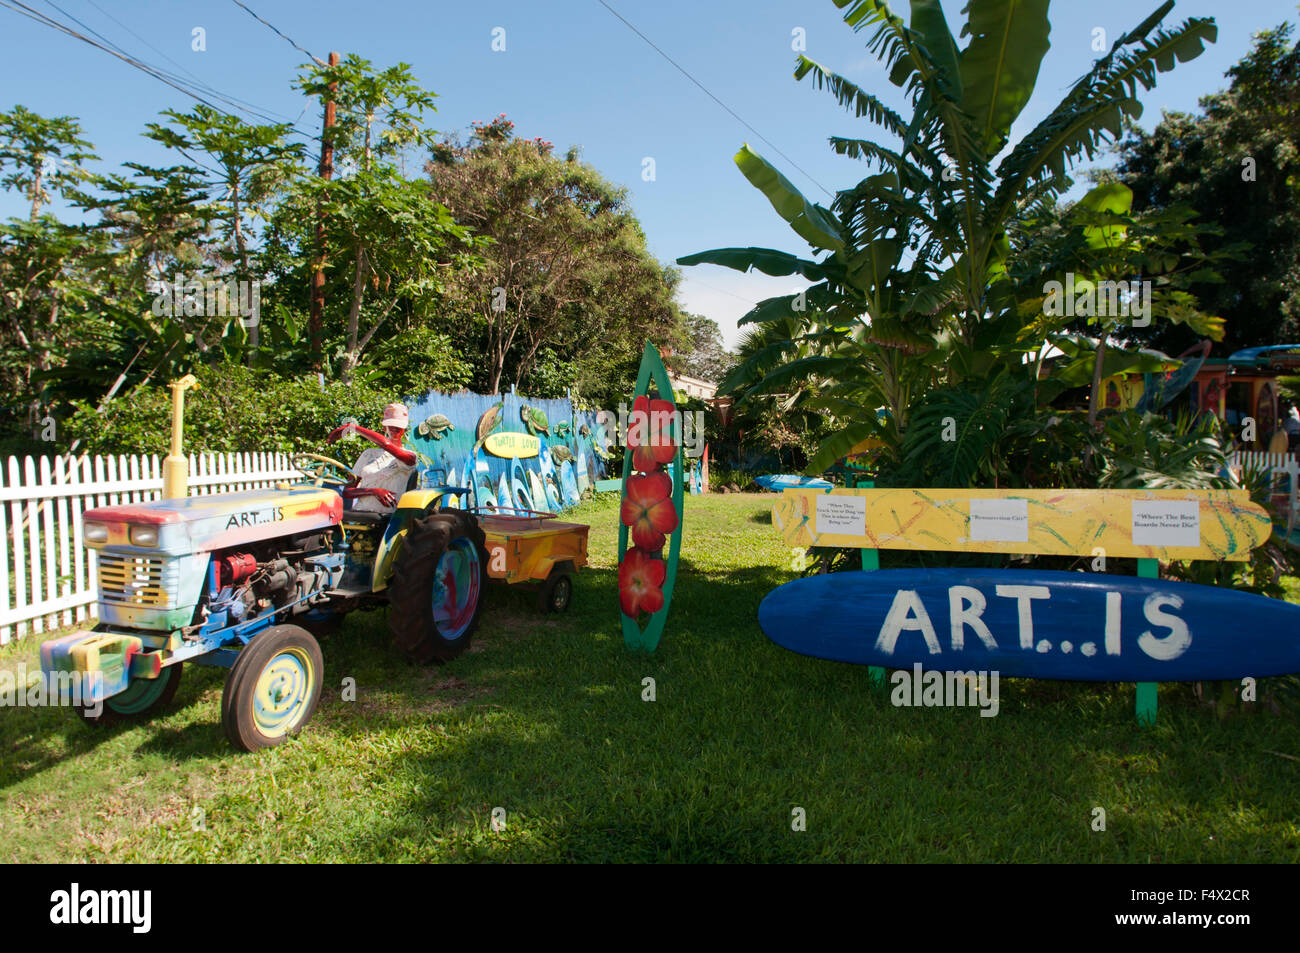 Kunst, Surfbrett Friedhof Stück Himmel für künstlerische Gemälde auf Defekte und alte Autos und Fronlader. Haleiwa Nordküste Oahu Hawaii Stockfoto